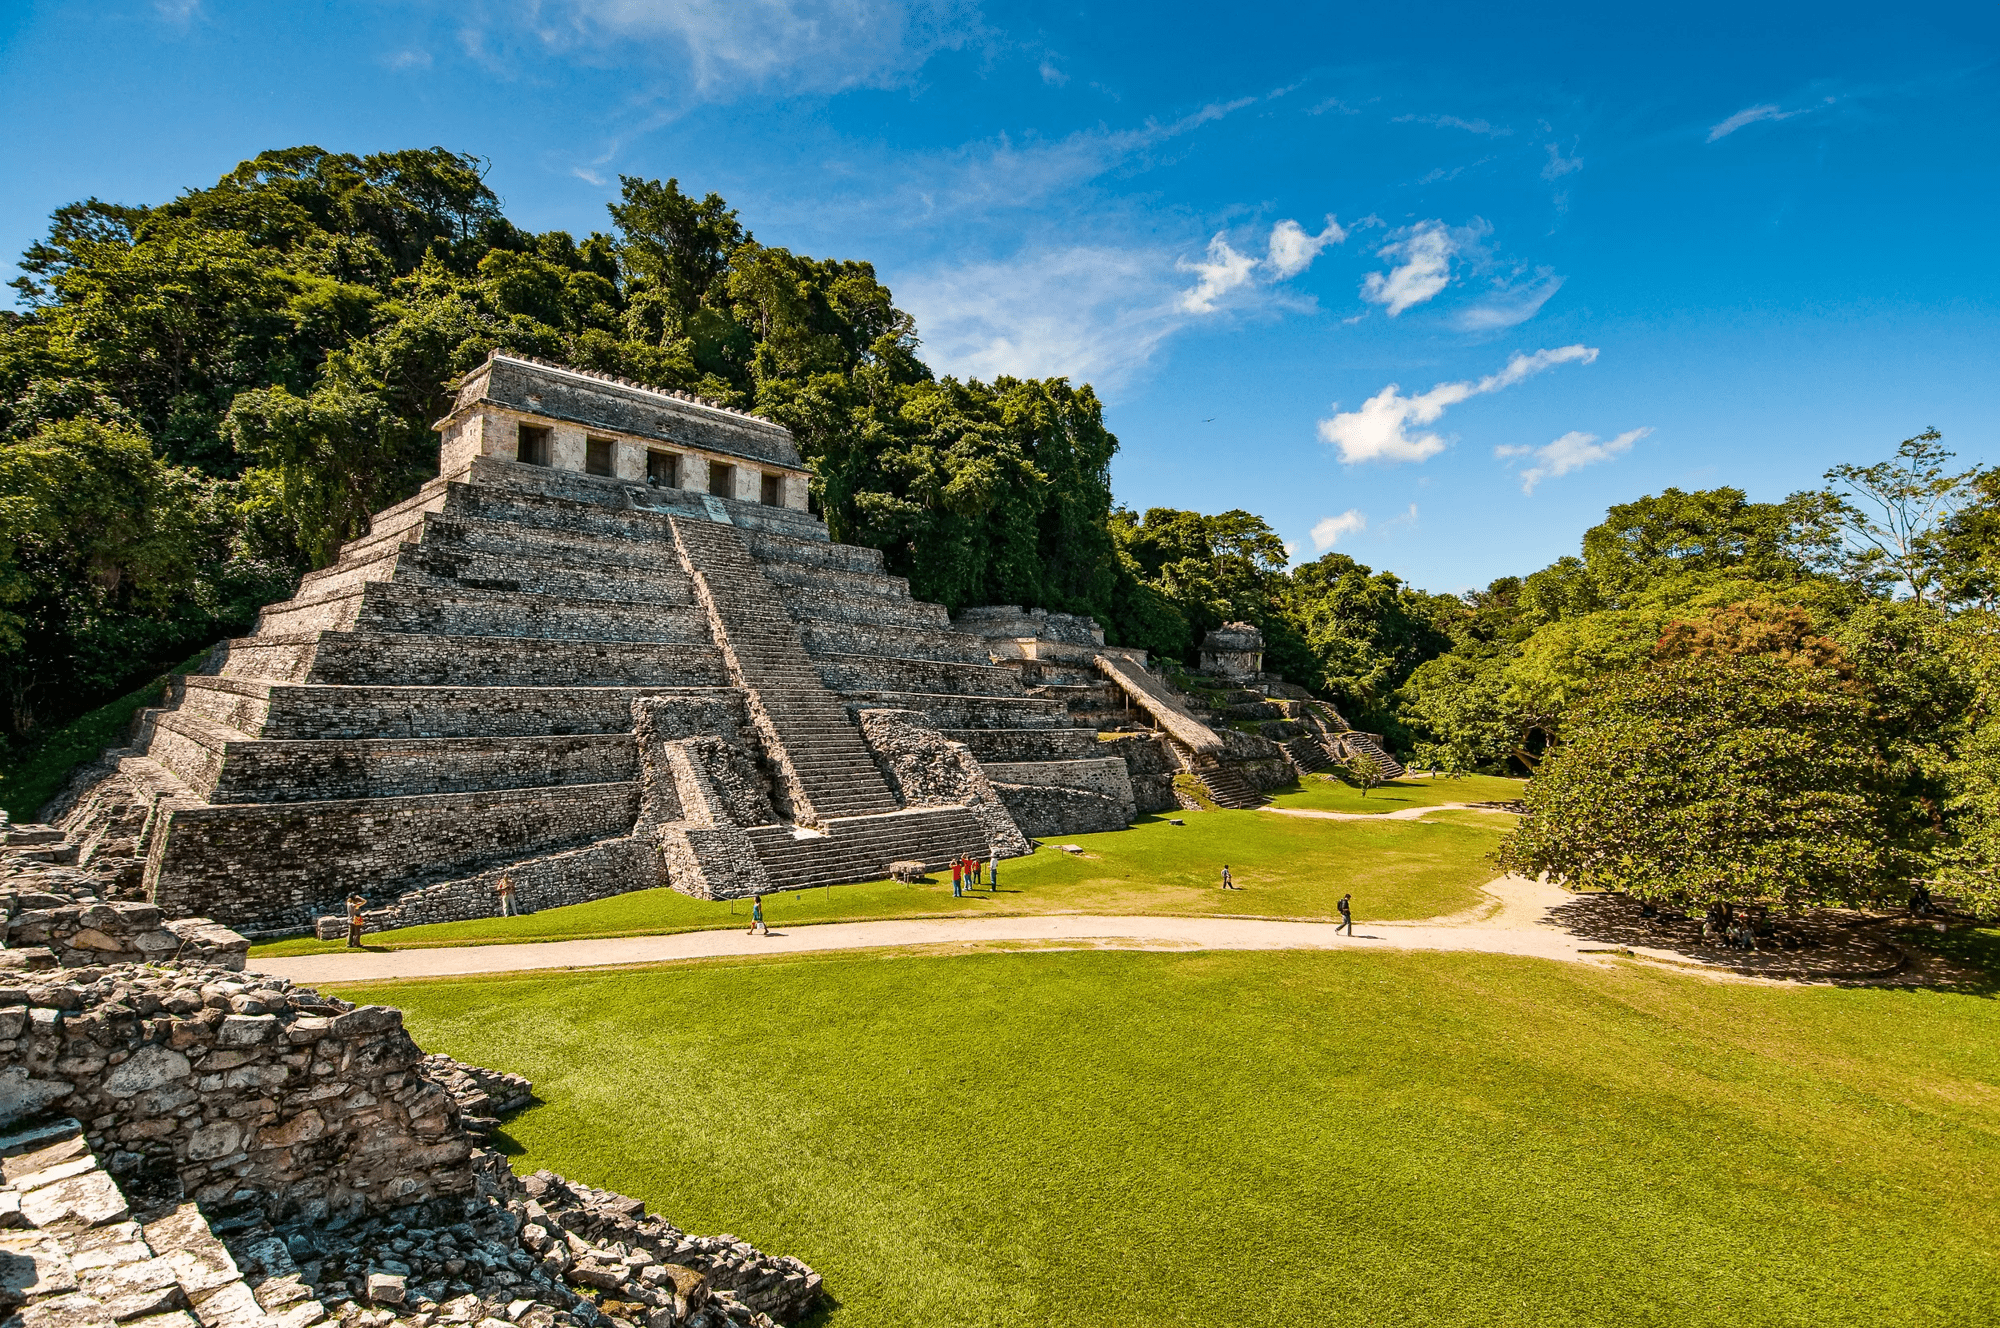 17-daagse groepsrondreis Op zoek naar Maya's & Azteken in Mexico